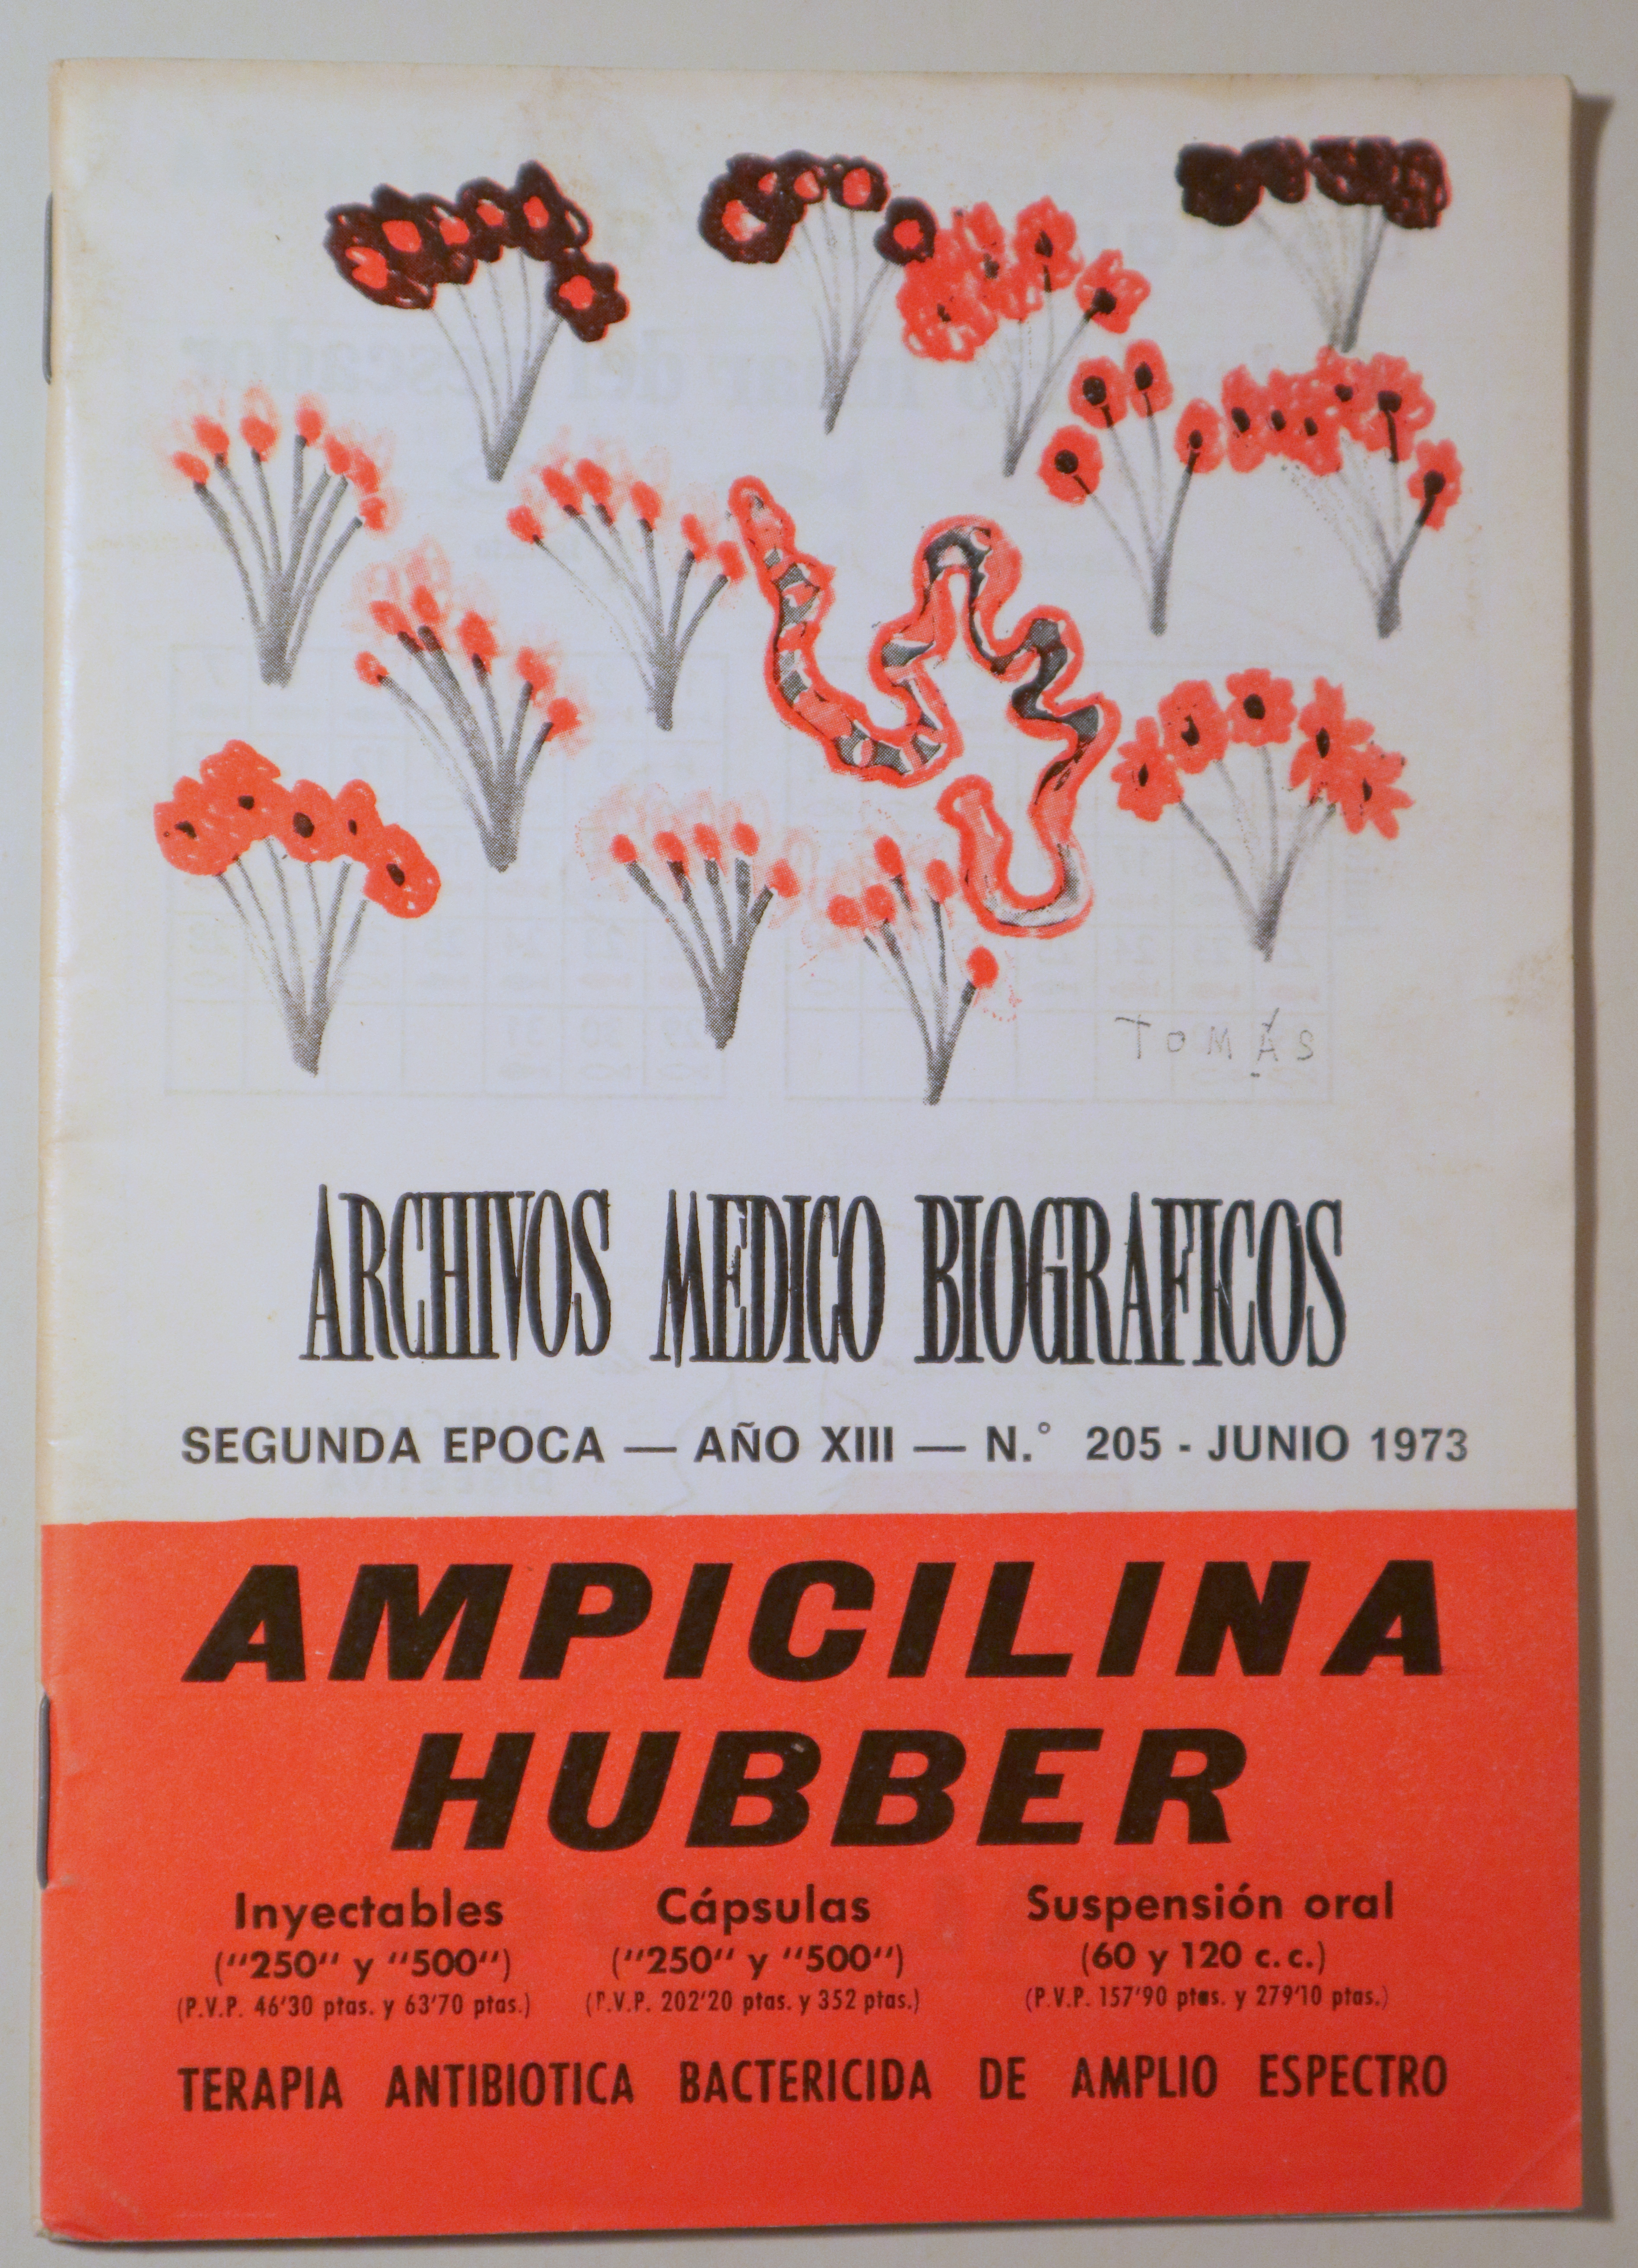 ARCHIVOS MÉDICOS BIOGRÁFICOS nº 205. Ampicilina Hubber -  Barcelona 1973 - Ilustrado